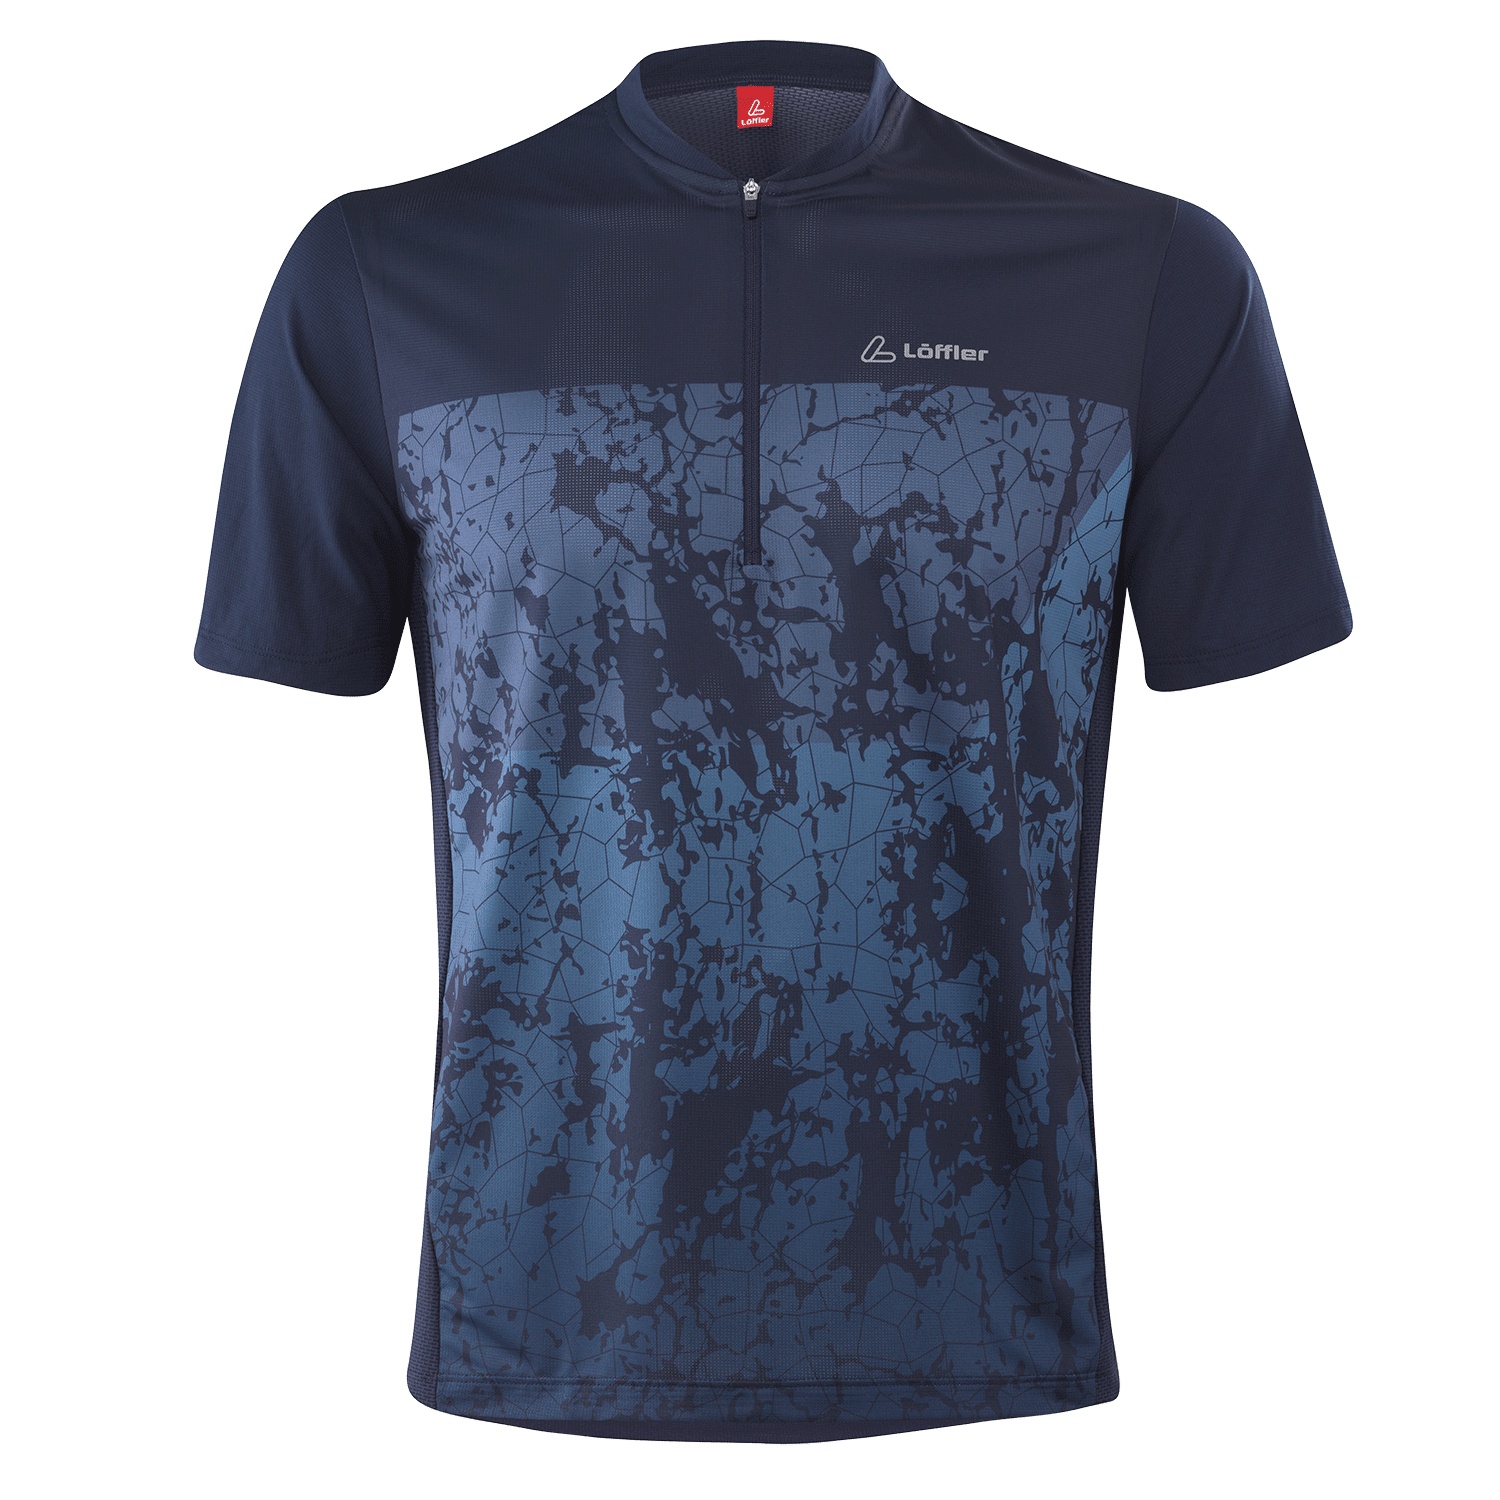 Produktbild von Löffler Shady Half Zip Bike T-Shirt Herren - dunkelblau 495